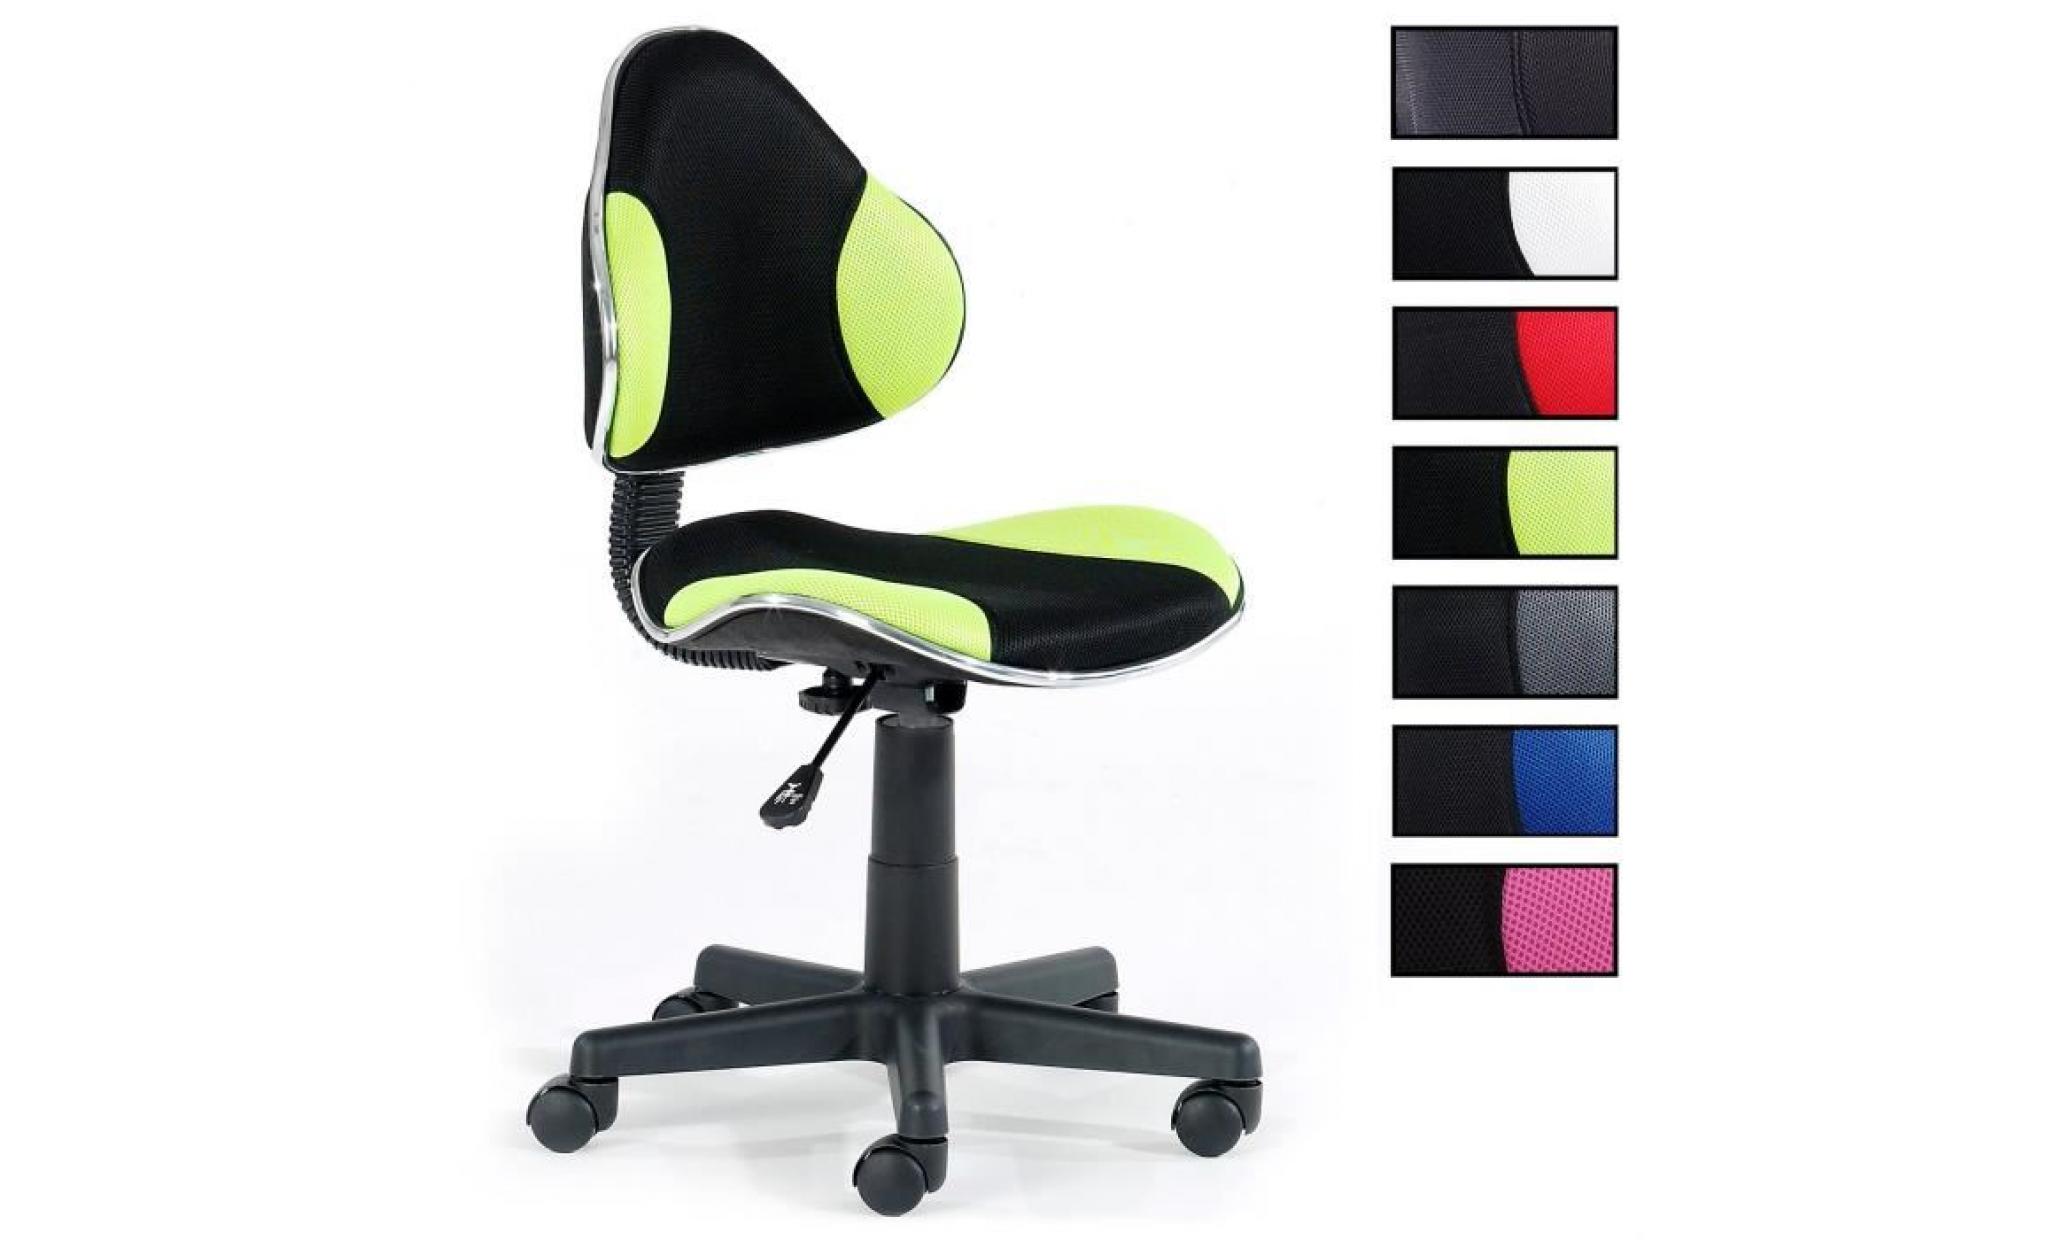 chaise de bureau pour enfant alondra fauteuil pivotant avec hauteur réglable, revêtement en mesh noir/vert pas cher